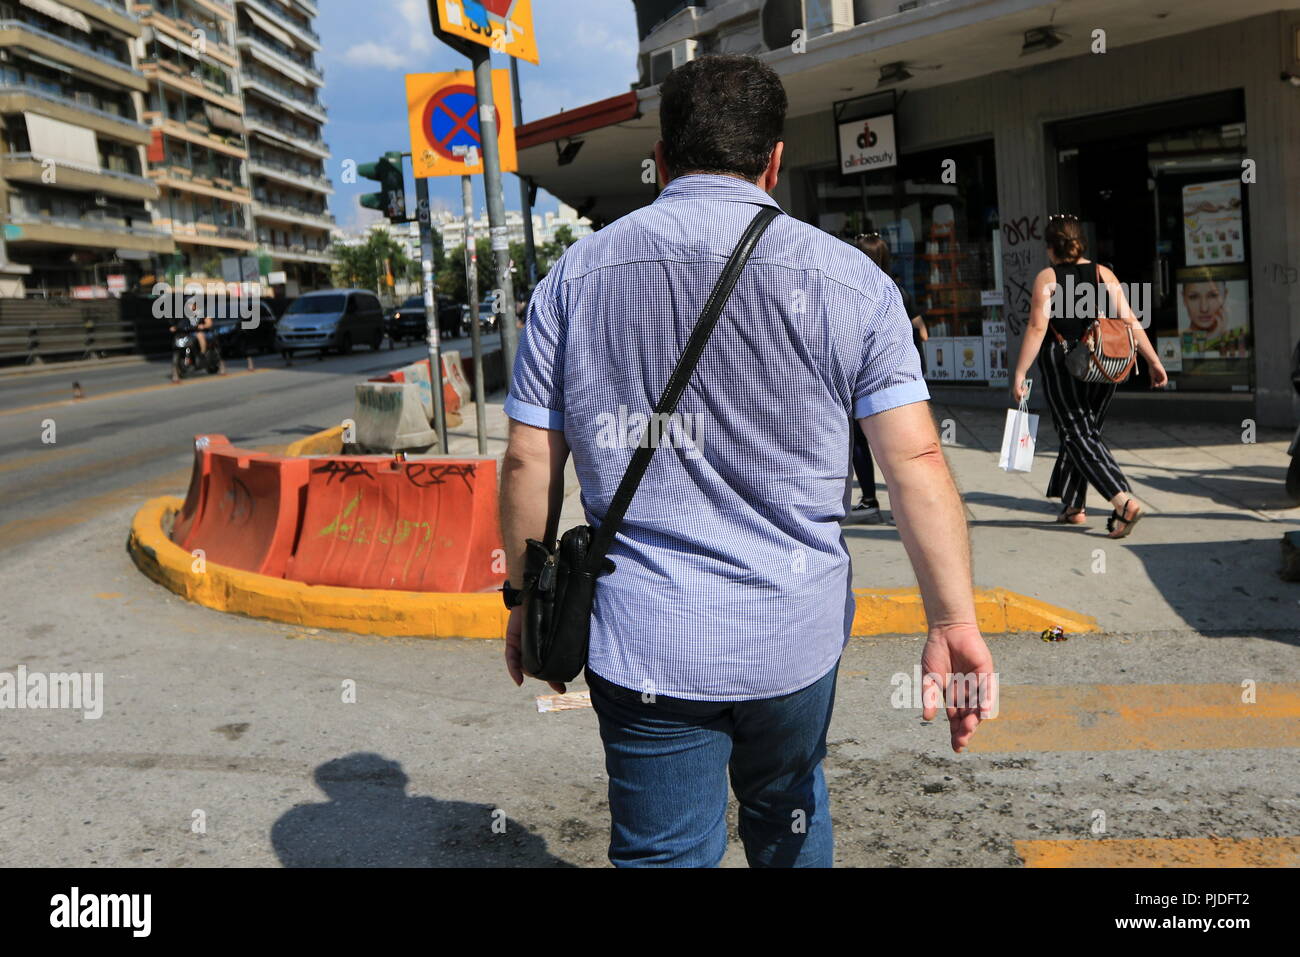 Uomo che cammina sulla strada con il retro della sua maglietta imbevuto di sudore Foto Stock